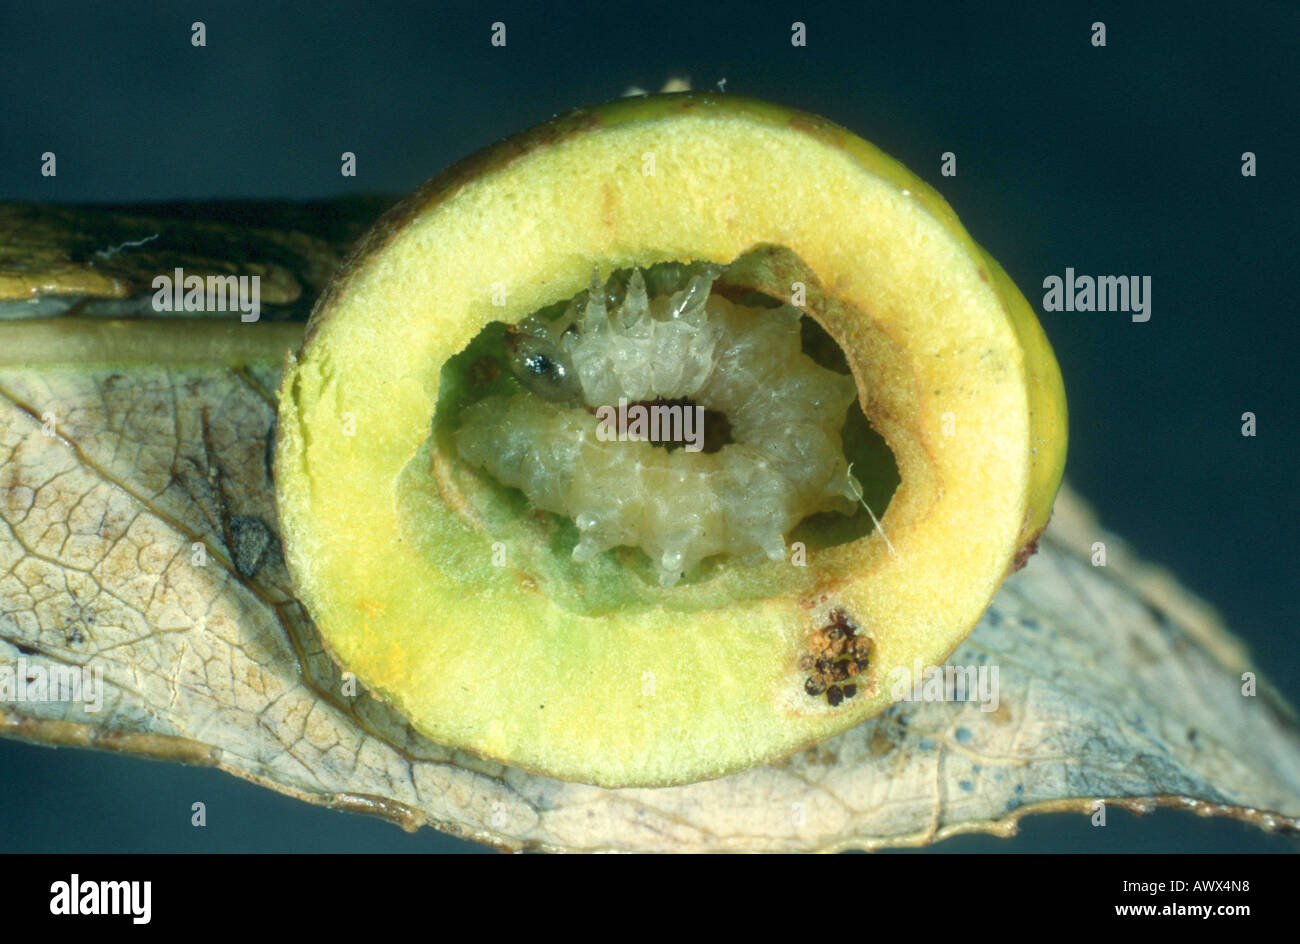 sawfly (Pontania viminalis), sliced gall with larva Stock Photo